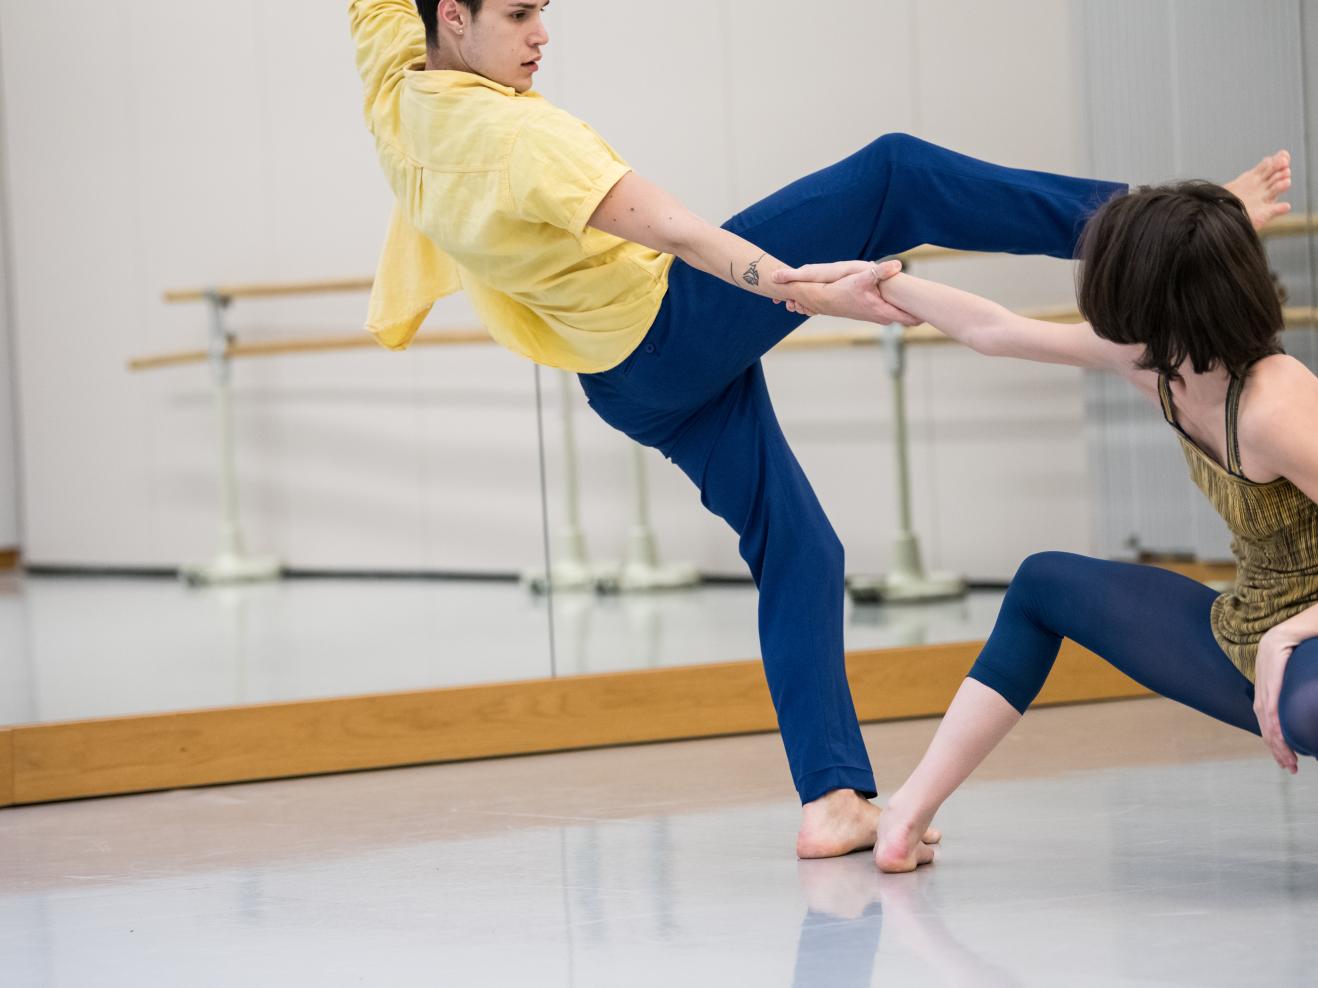 Ein Tänzer und eine Tänzerin im Tanzstudio, mitten in der dynamischen Bewegung fotografiert, sie halten sie an einer Hand fest.